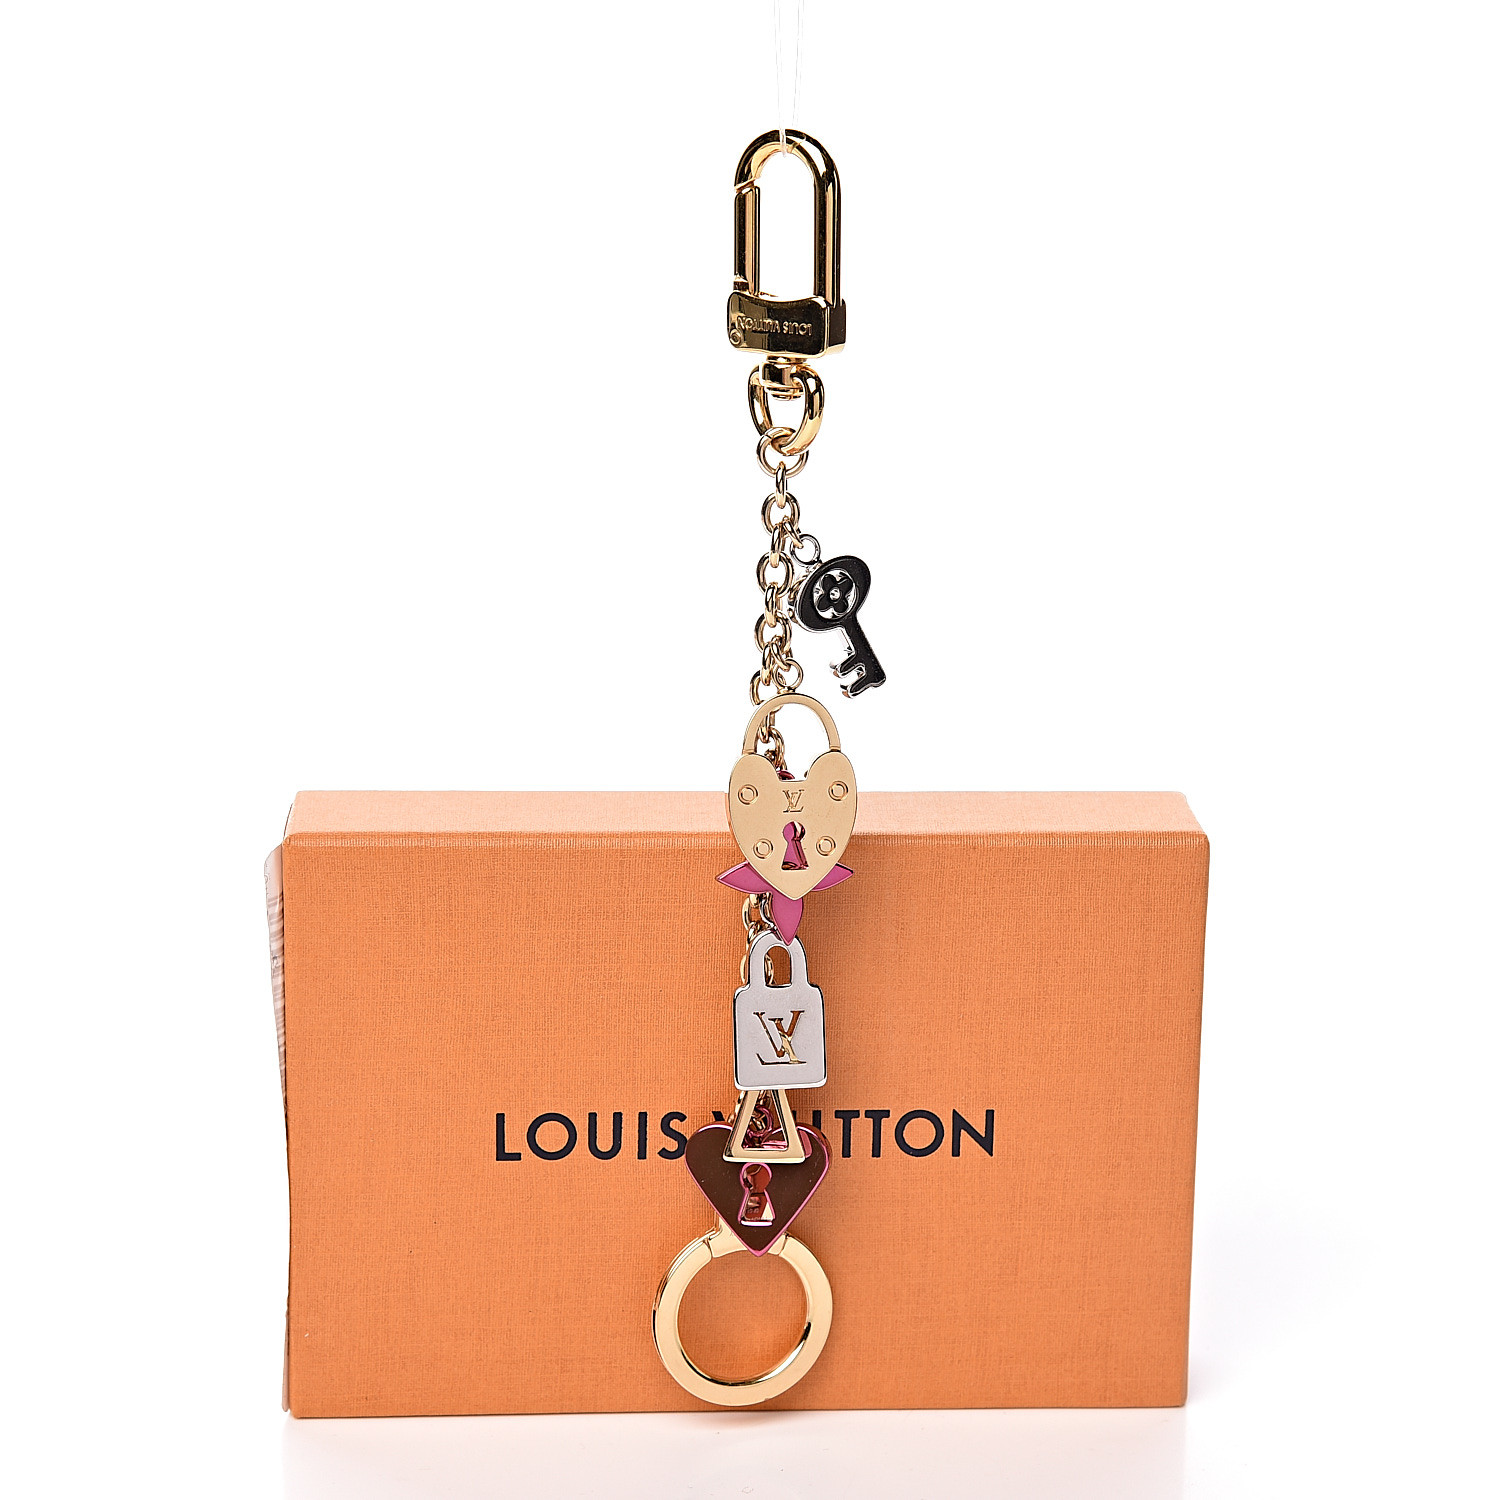 LOUIS VUITTON Love Lock Heart Key Chain Bag Charm 485594